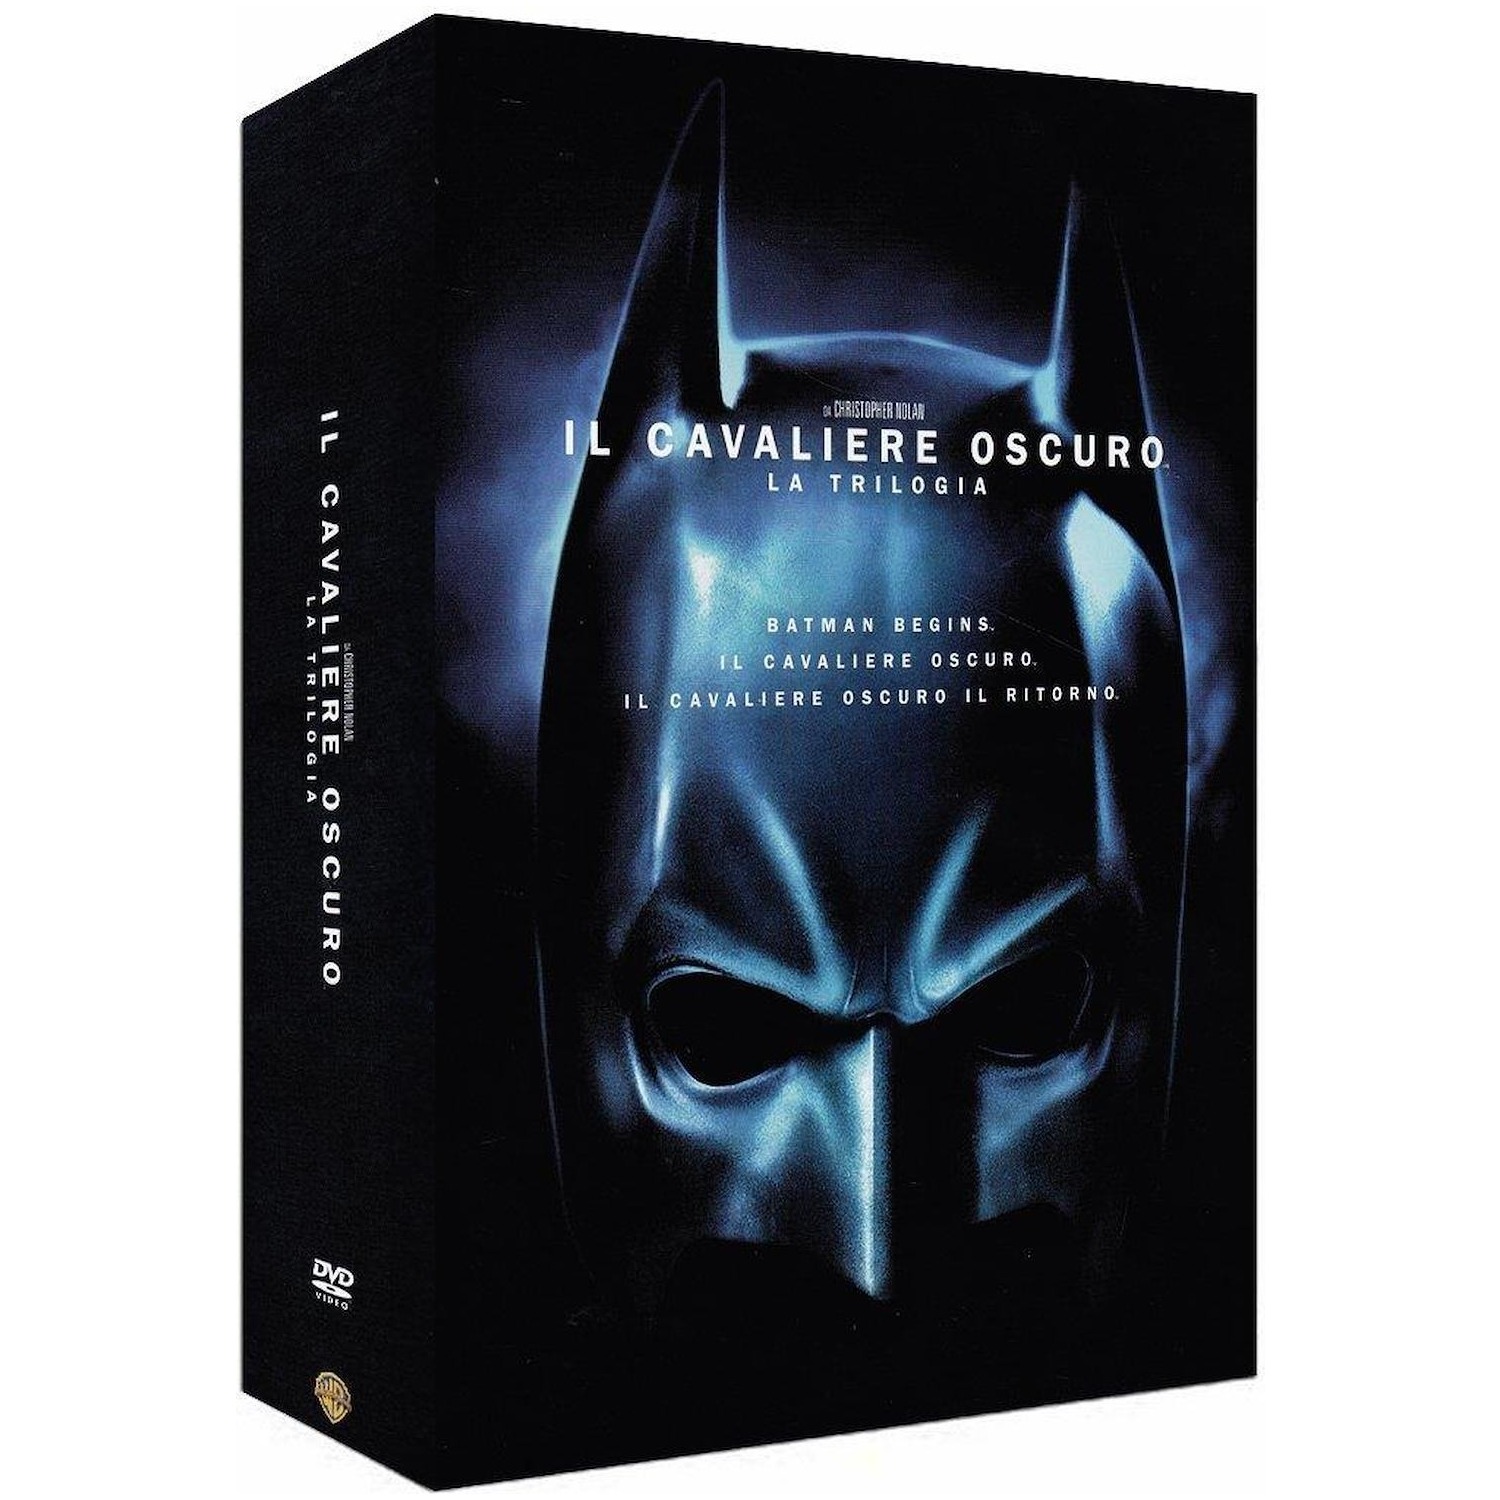 Immagine per Cofanetto DVD Batman il Cavaliere Oscuro  trilogy da DIMOStore